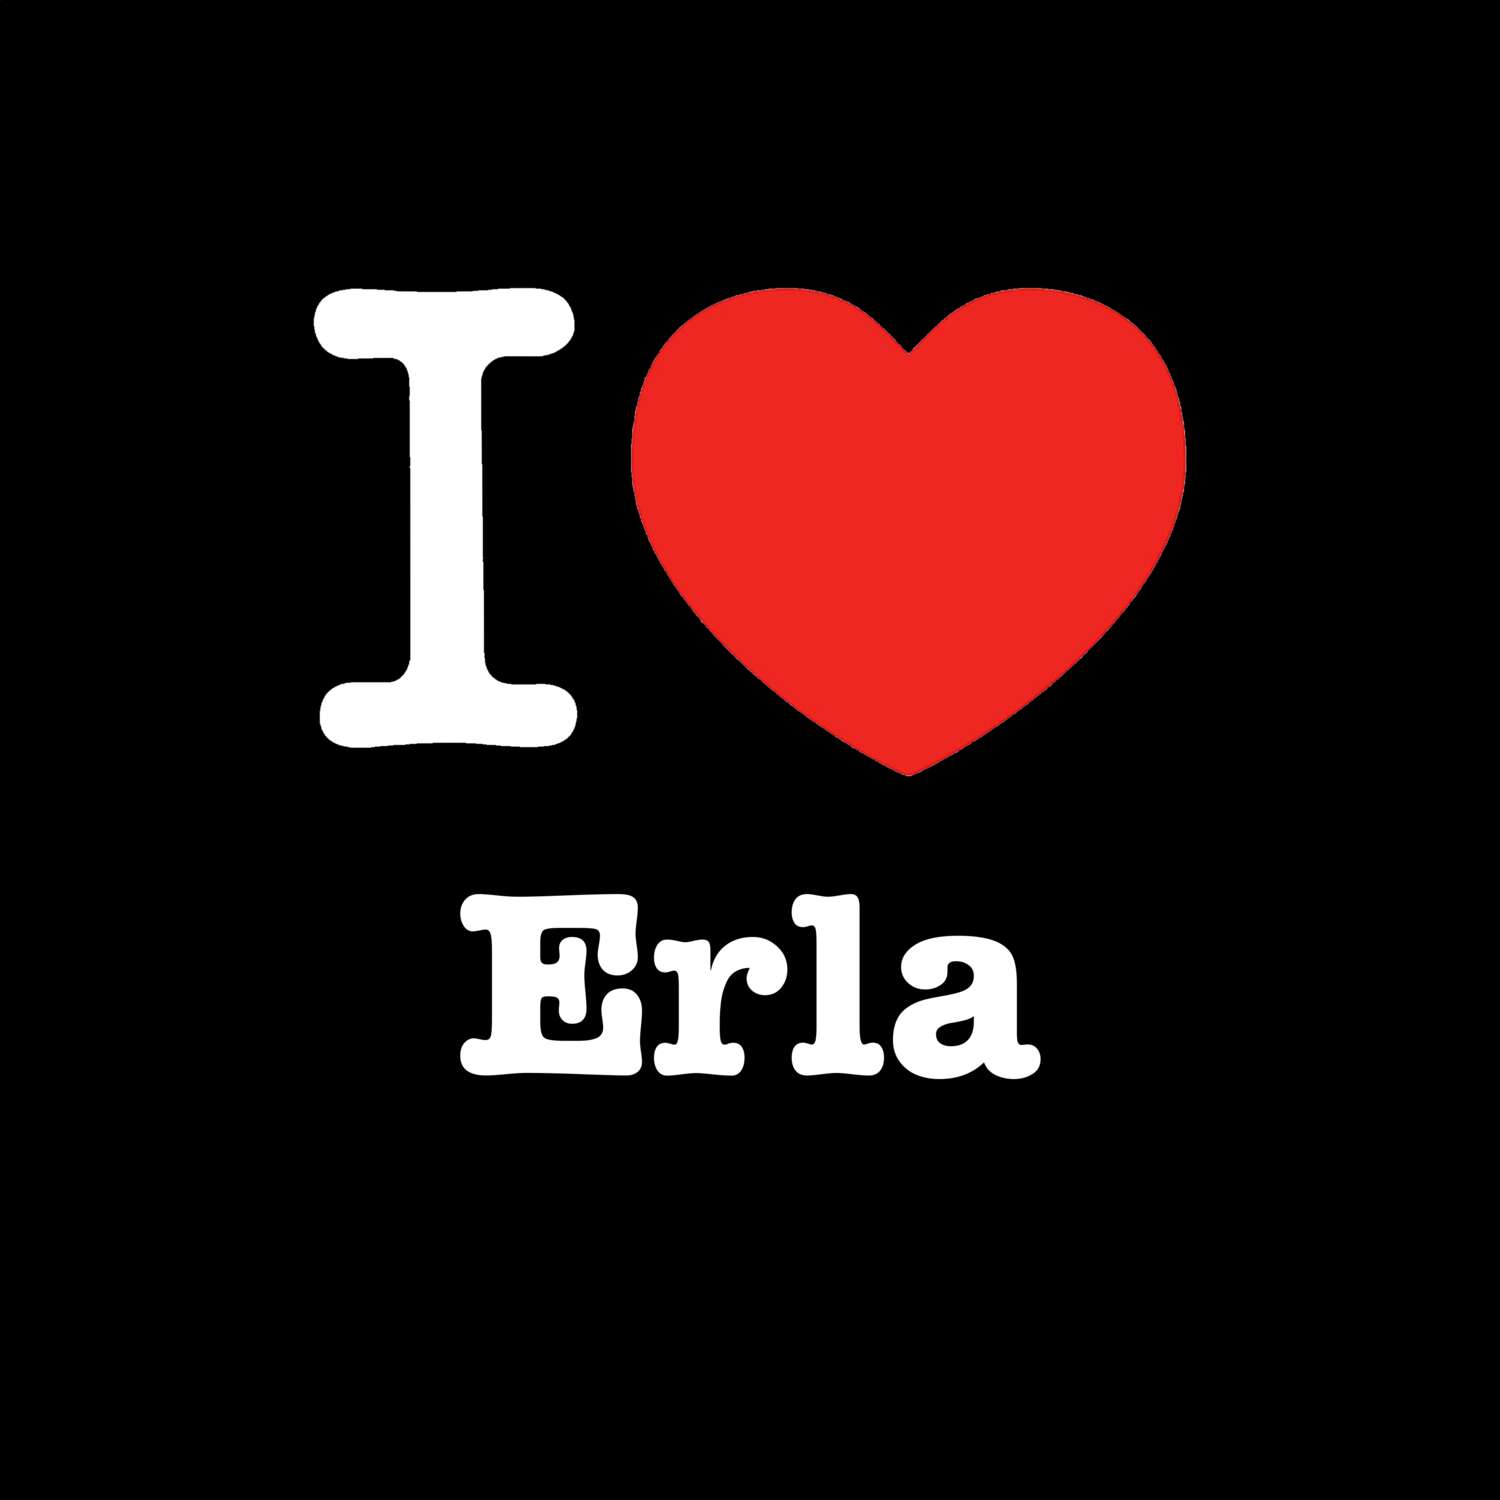 Erla T-Shirt »I love«